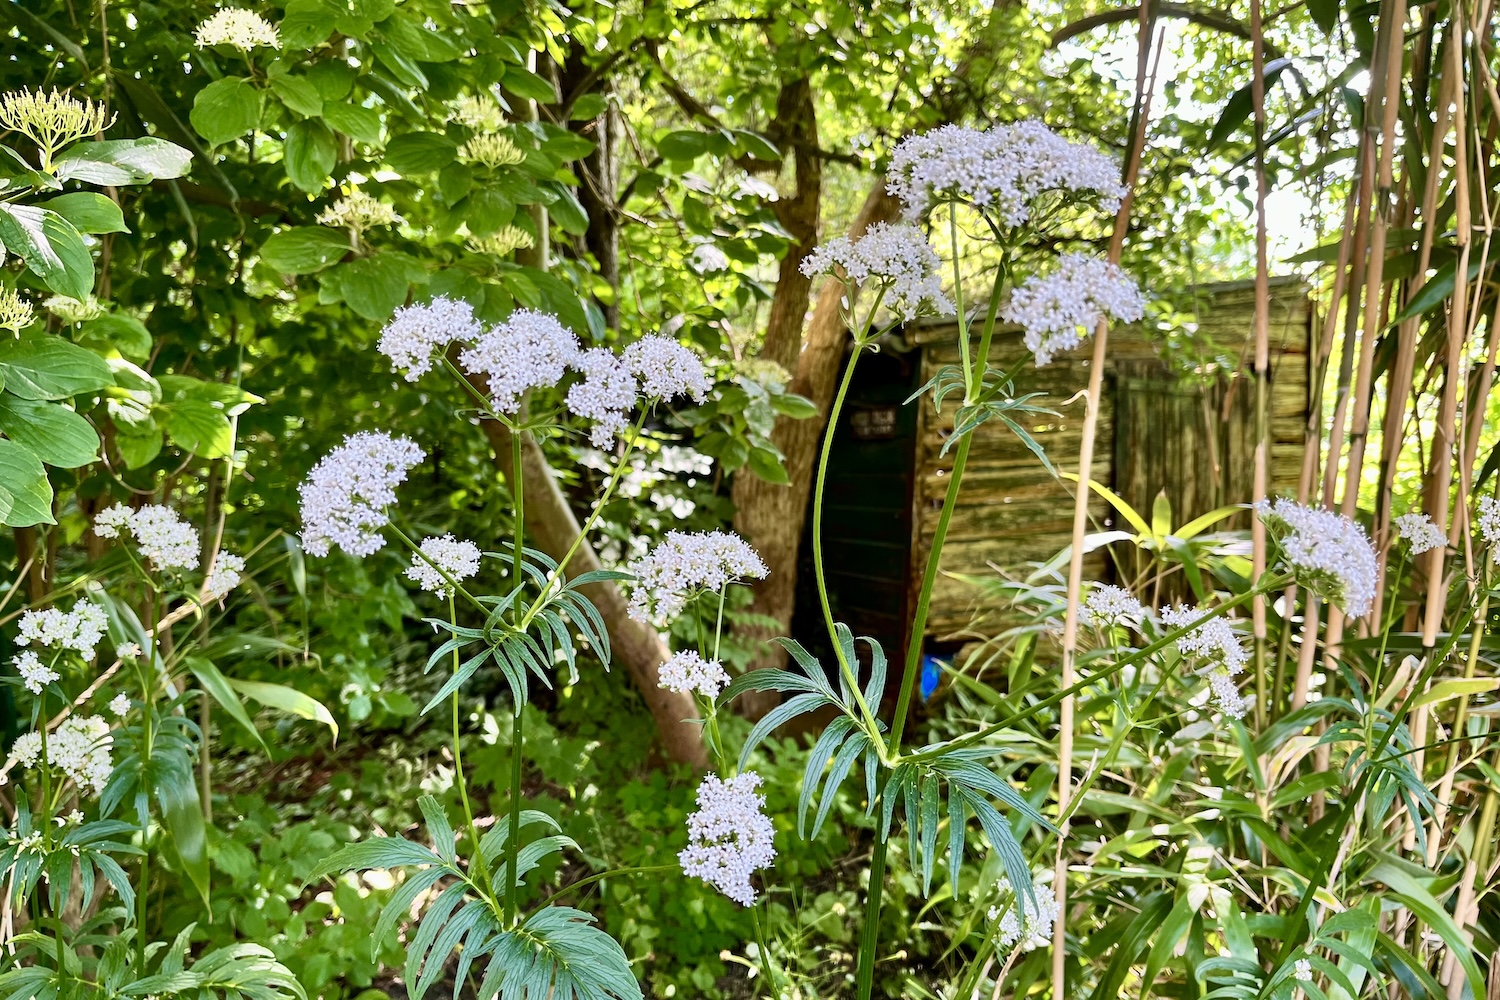 Witte bloemen in een wilde tuin, weekend favorieten over minderen en andere zaken